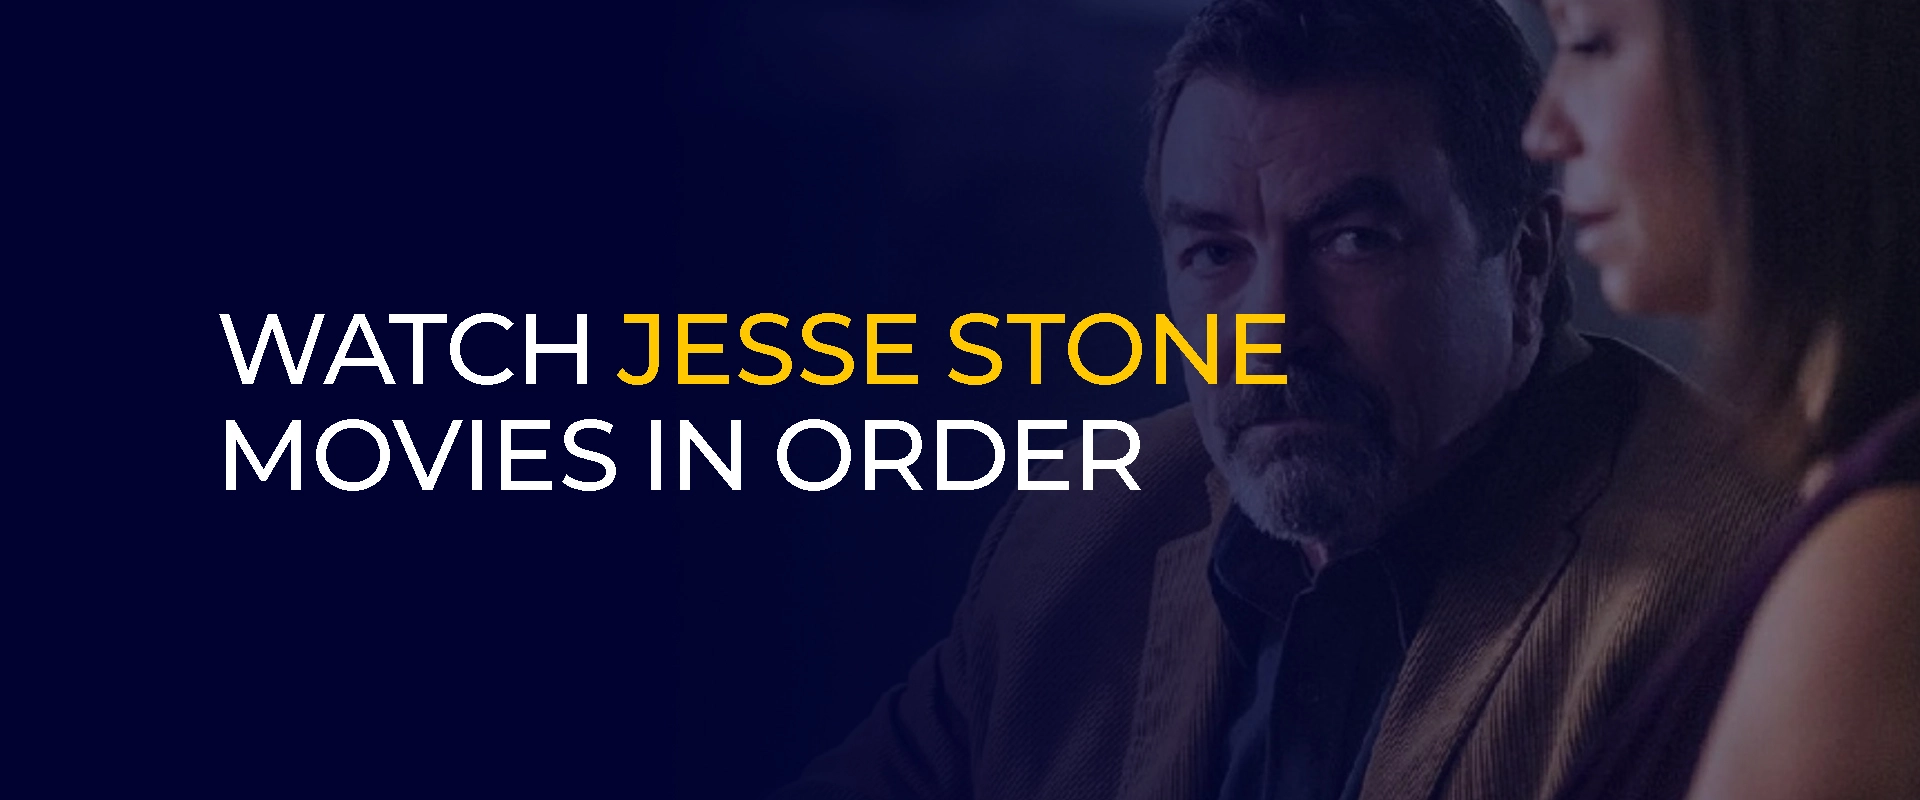 Bekijk Jesse-Stone-films op volgorde